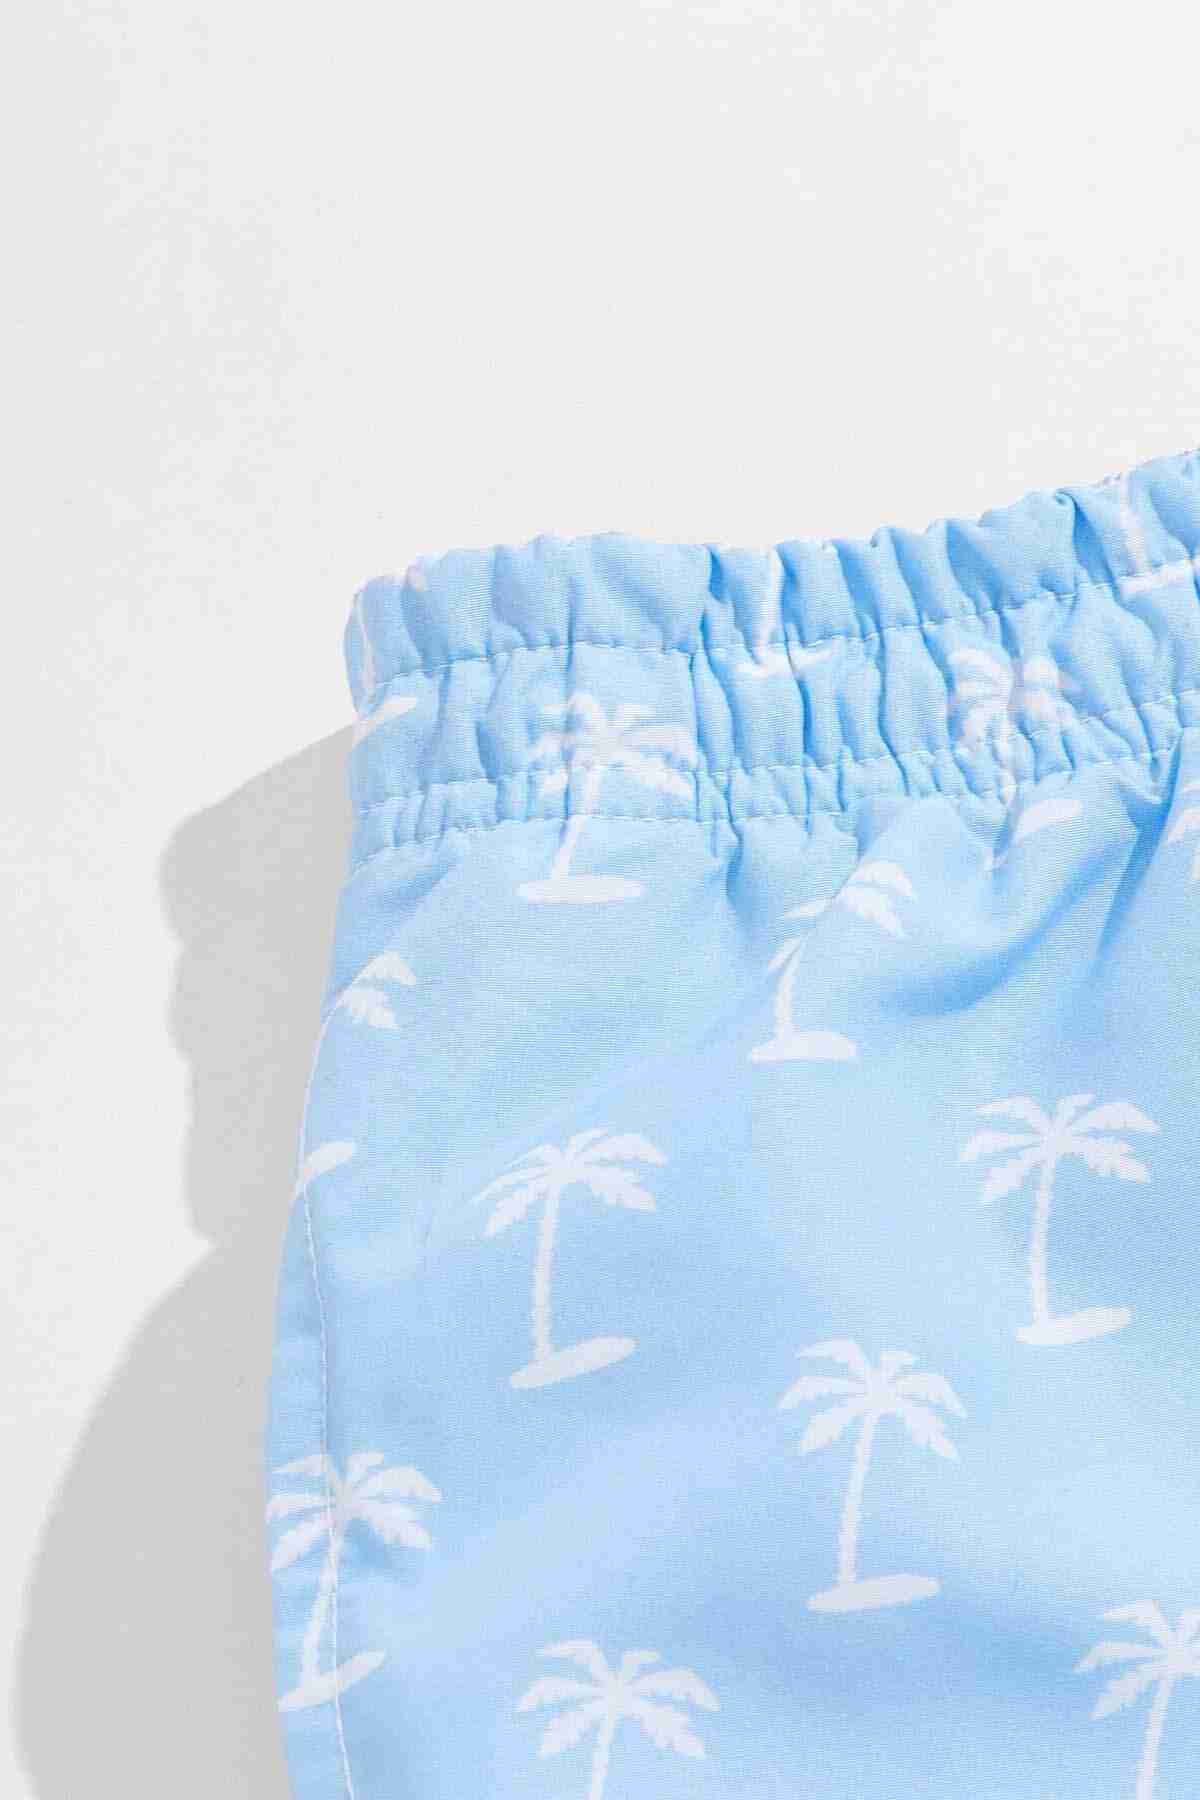 Men's Basic Standard Size stylish Palm Printed Swimsuit Pocket Marine shorts Blue Piamoda